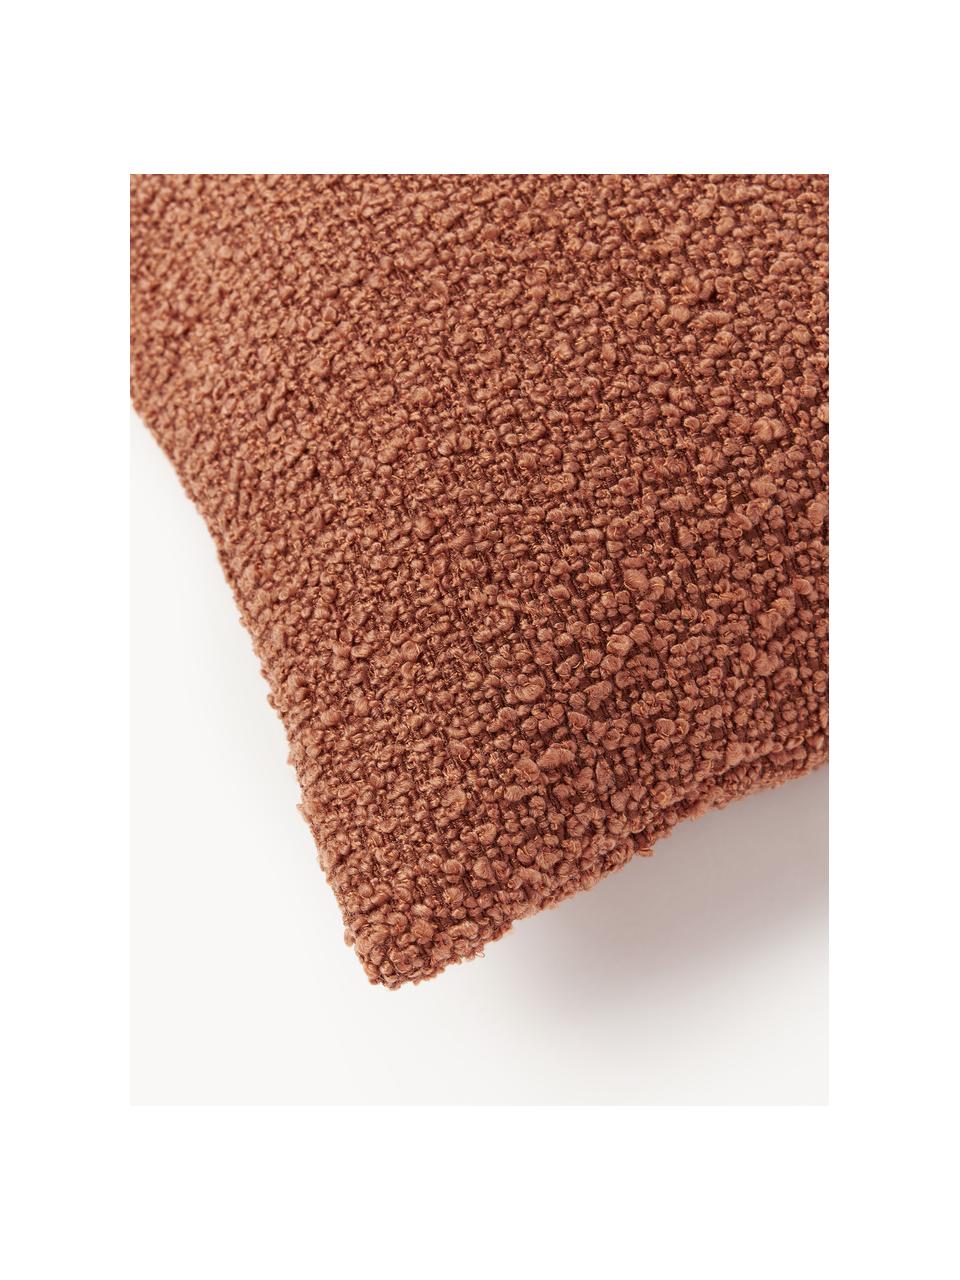 Housse de coussin en bouclette Bellamie, Tissu bouclette (95 % polyester, 5 % polyacrylique)

La bouclette est une matière qui se caractérise par sa texture aux courbes irrégulières. La surface caractéristique est créée par des boucles tissées de fils différents qui confèrent au tissu une structure unique. La structure bouclée a un effet à la fois isolant et moelleux, ce qui rend le tissu particulièrement douillet, Bouclé terracotta, larg. 30 x long. 50 cm